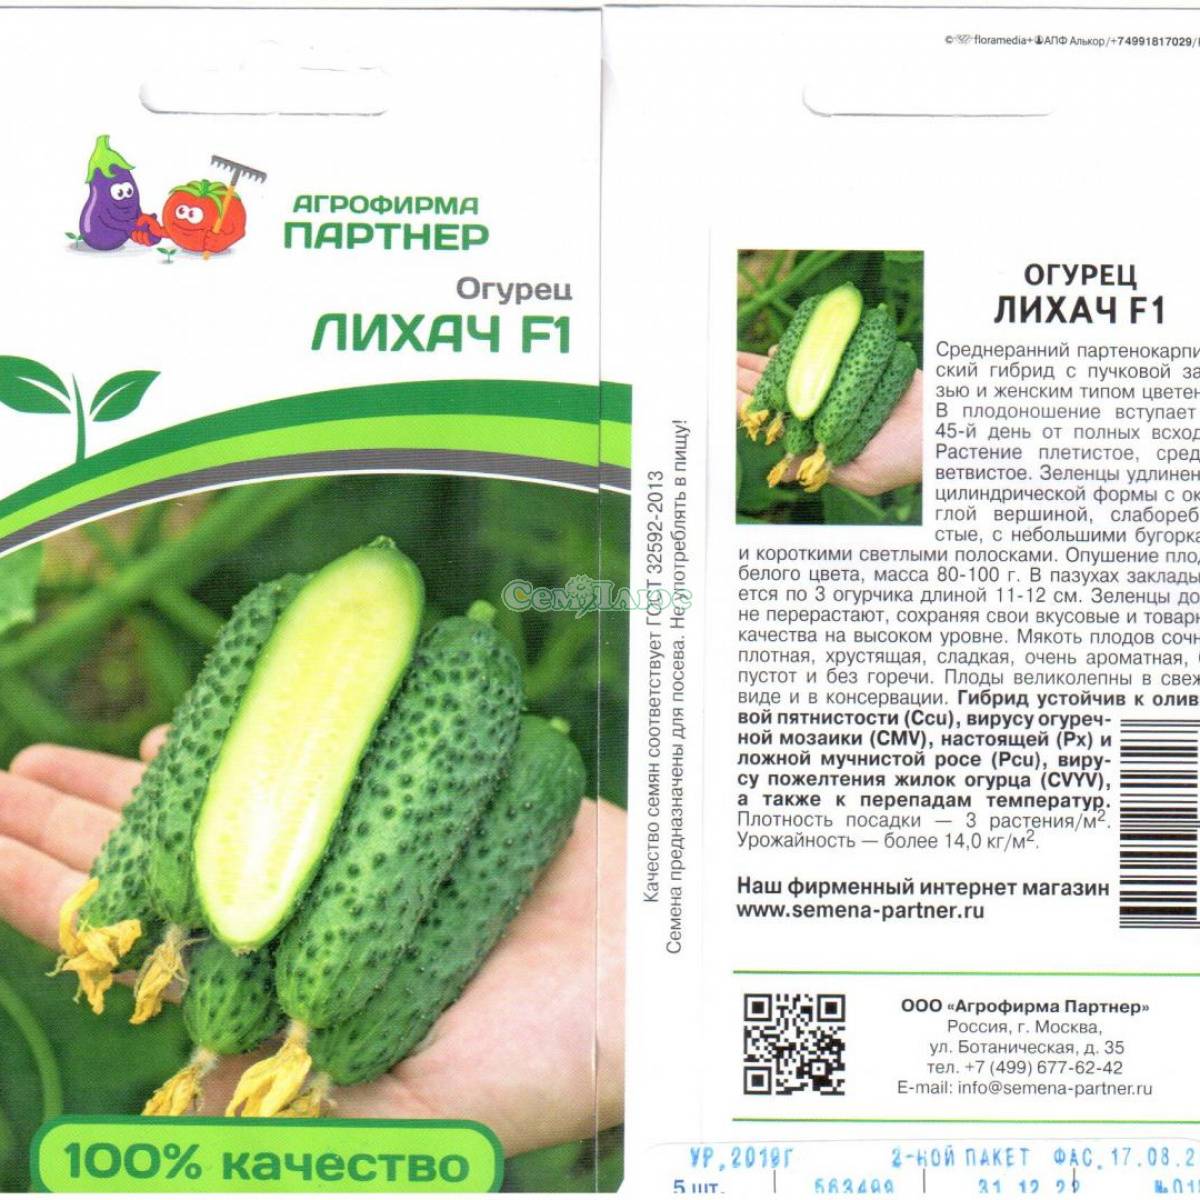 Огурцы патти: описание и характеристика сорта, выращивание с фото